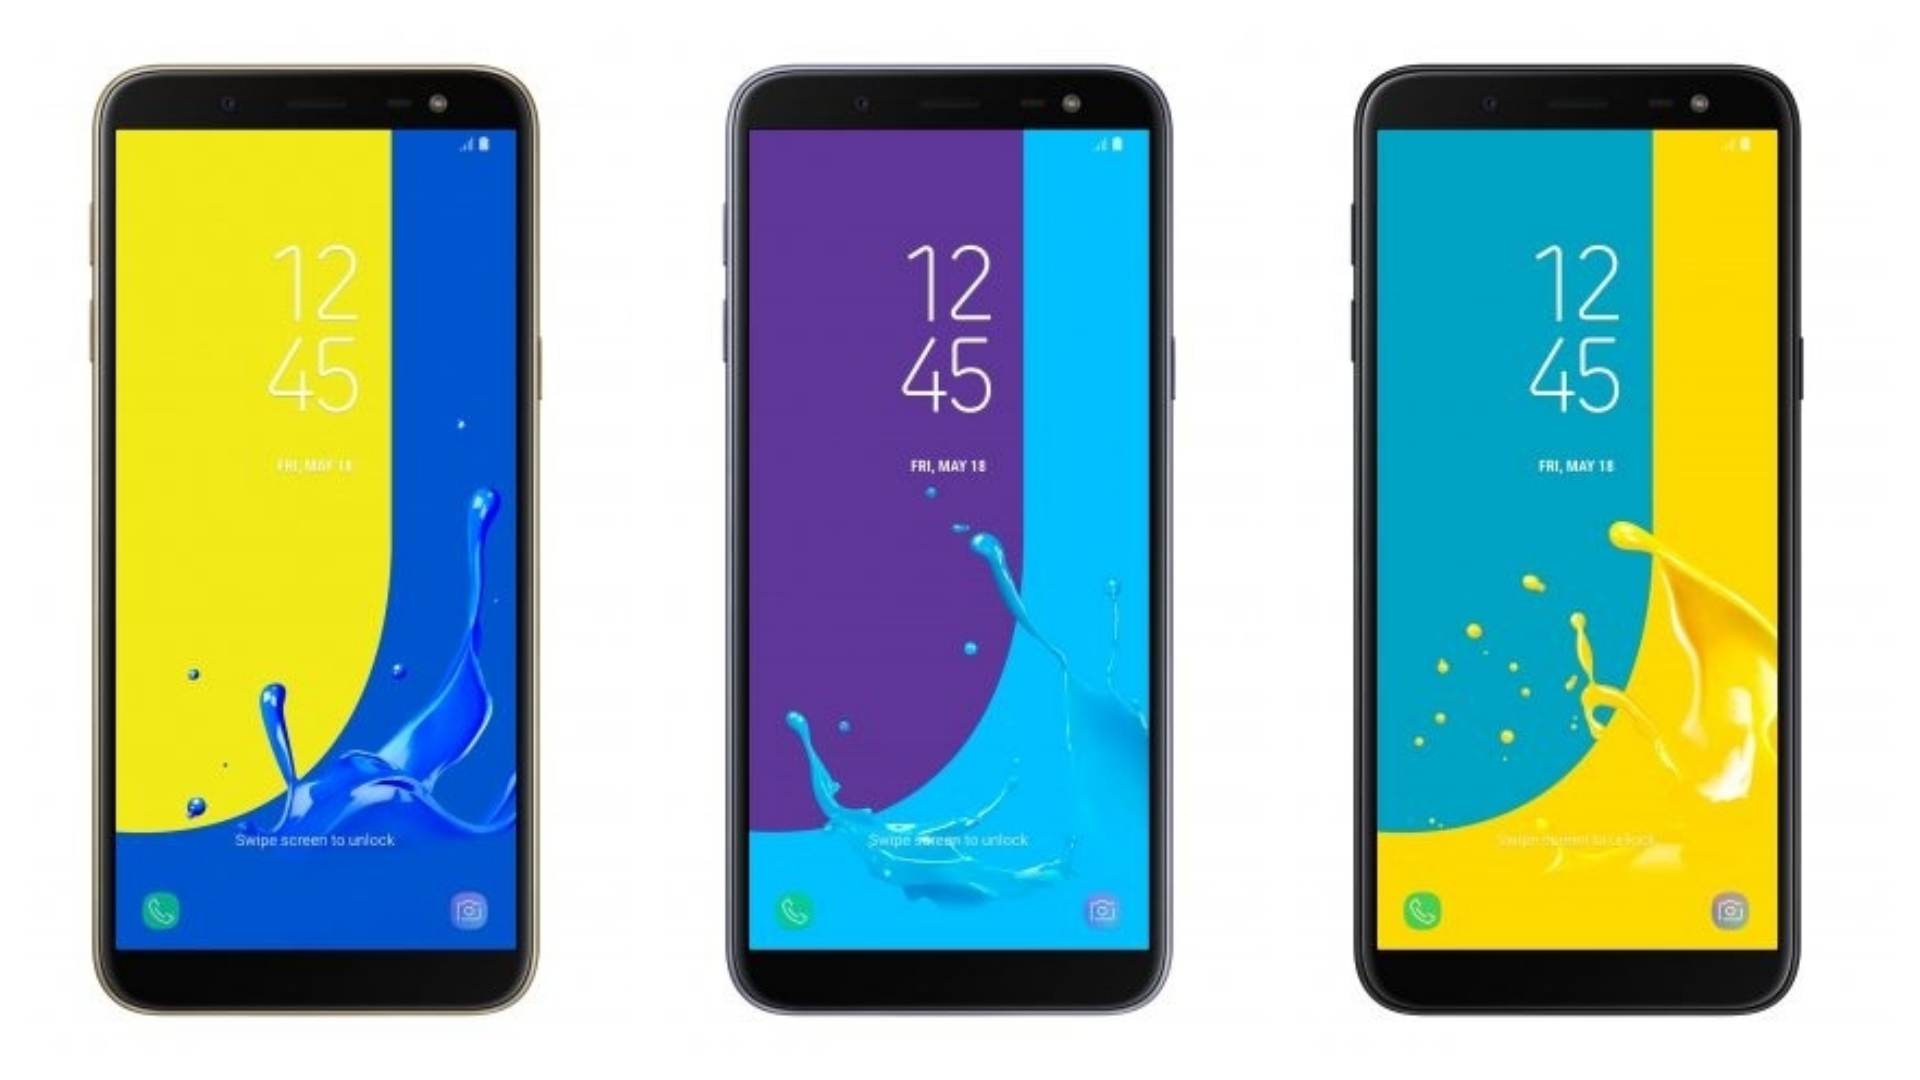 Samsung Galaxy J6: smartphone econômico da Samsung com recursos de destaque